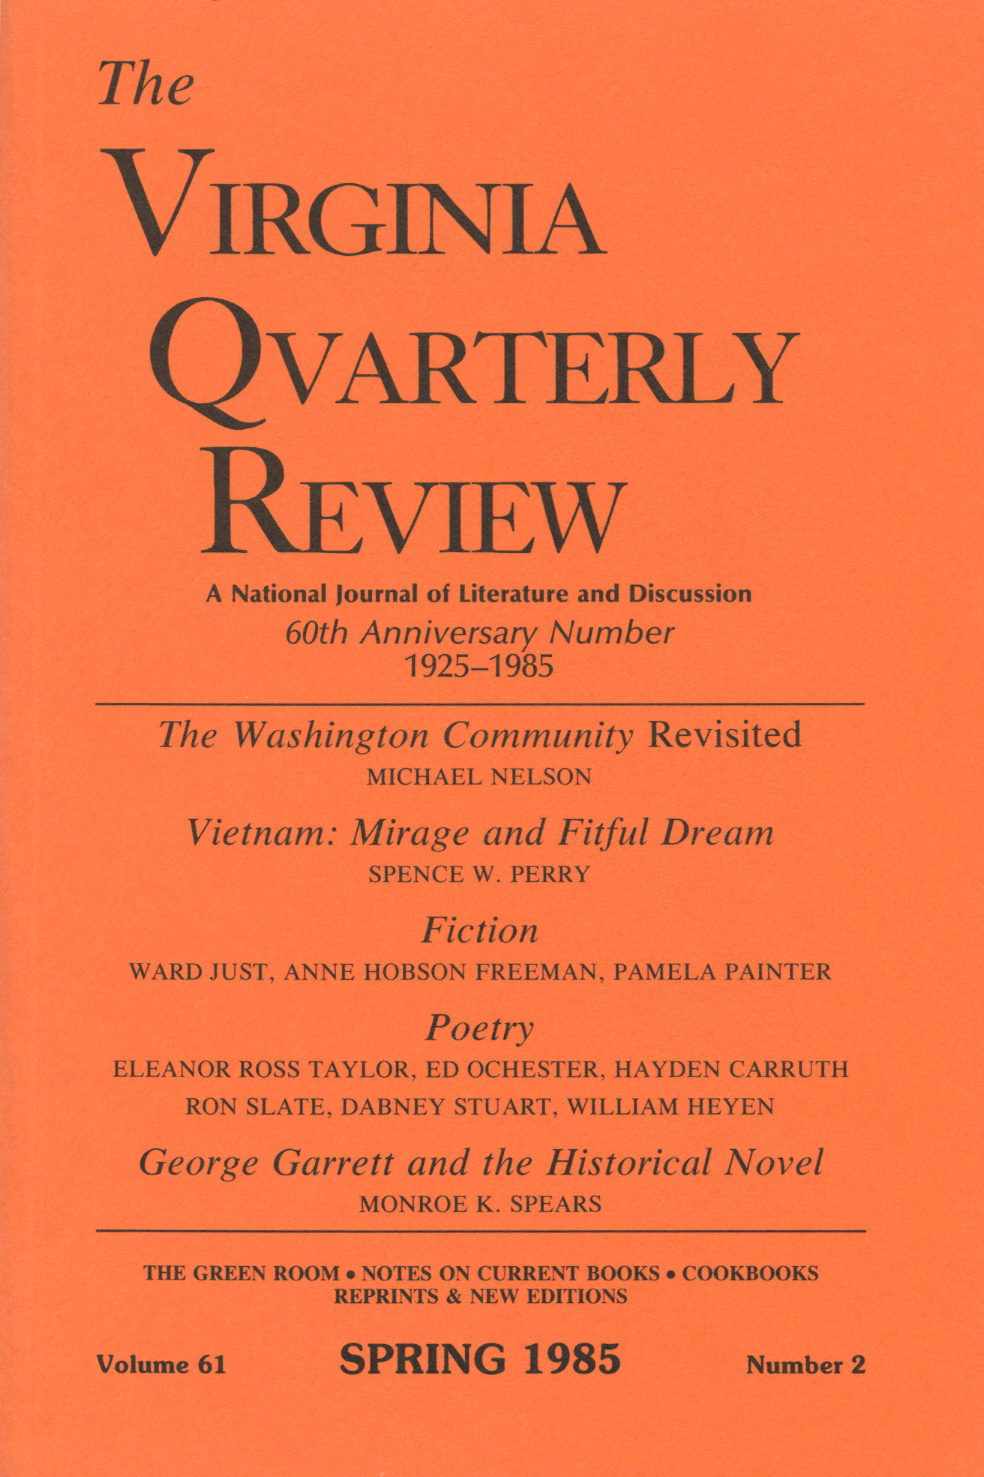 Virginia Quarterly Review, Spring 1985 cover